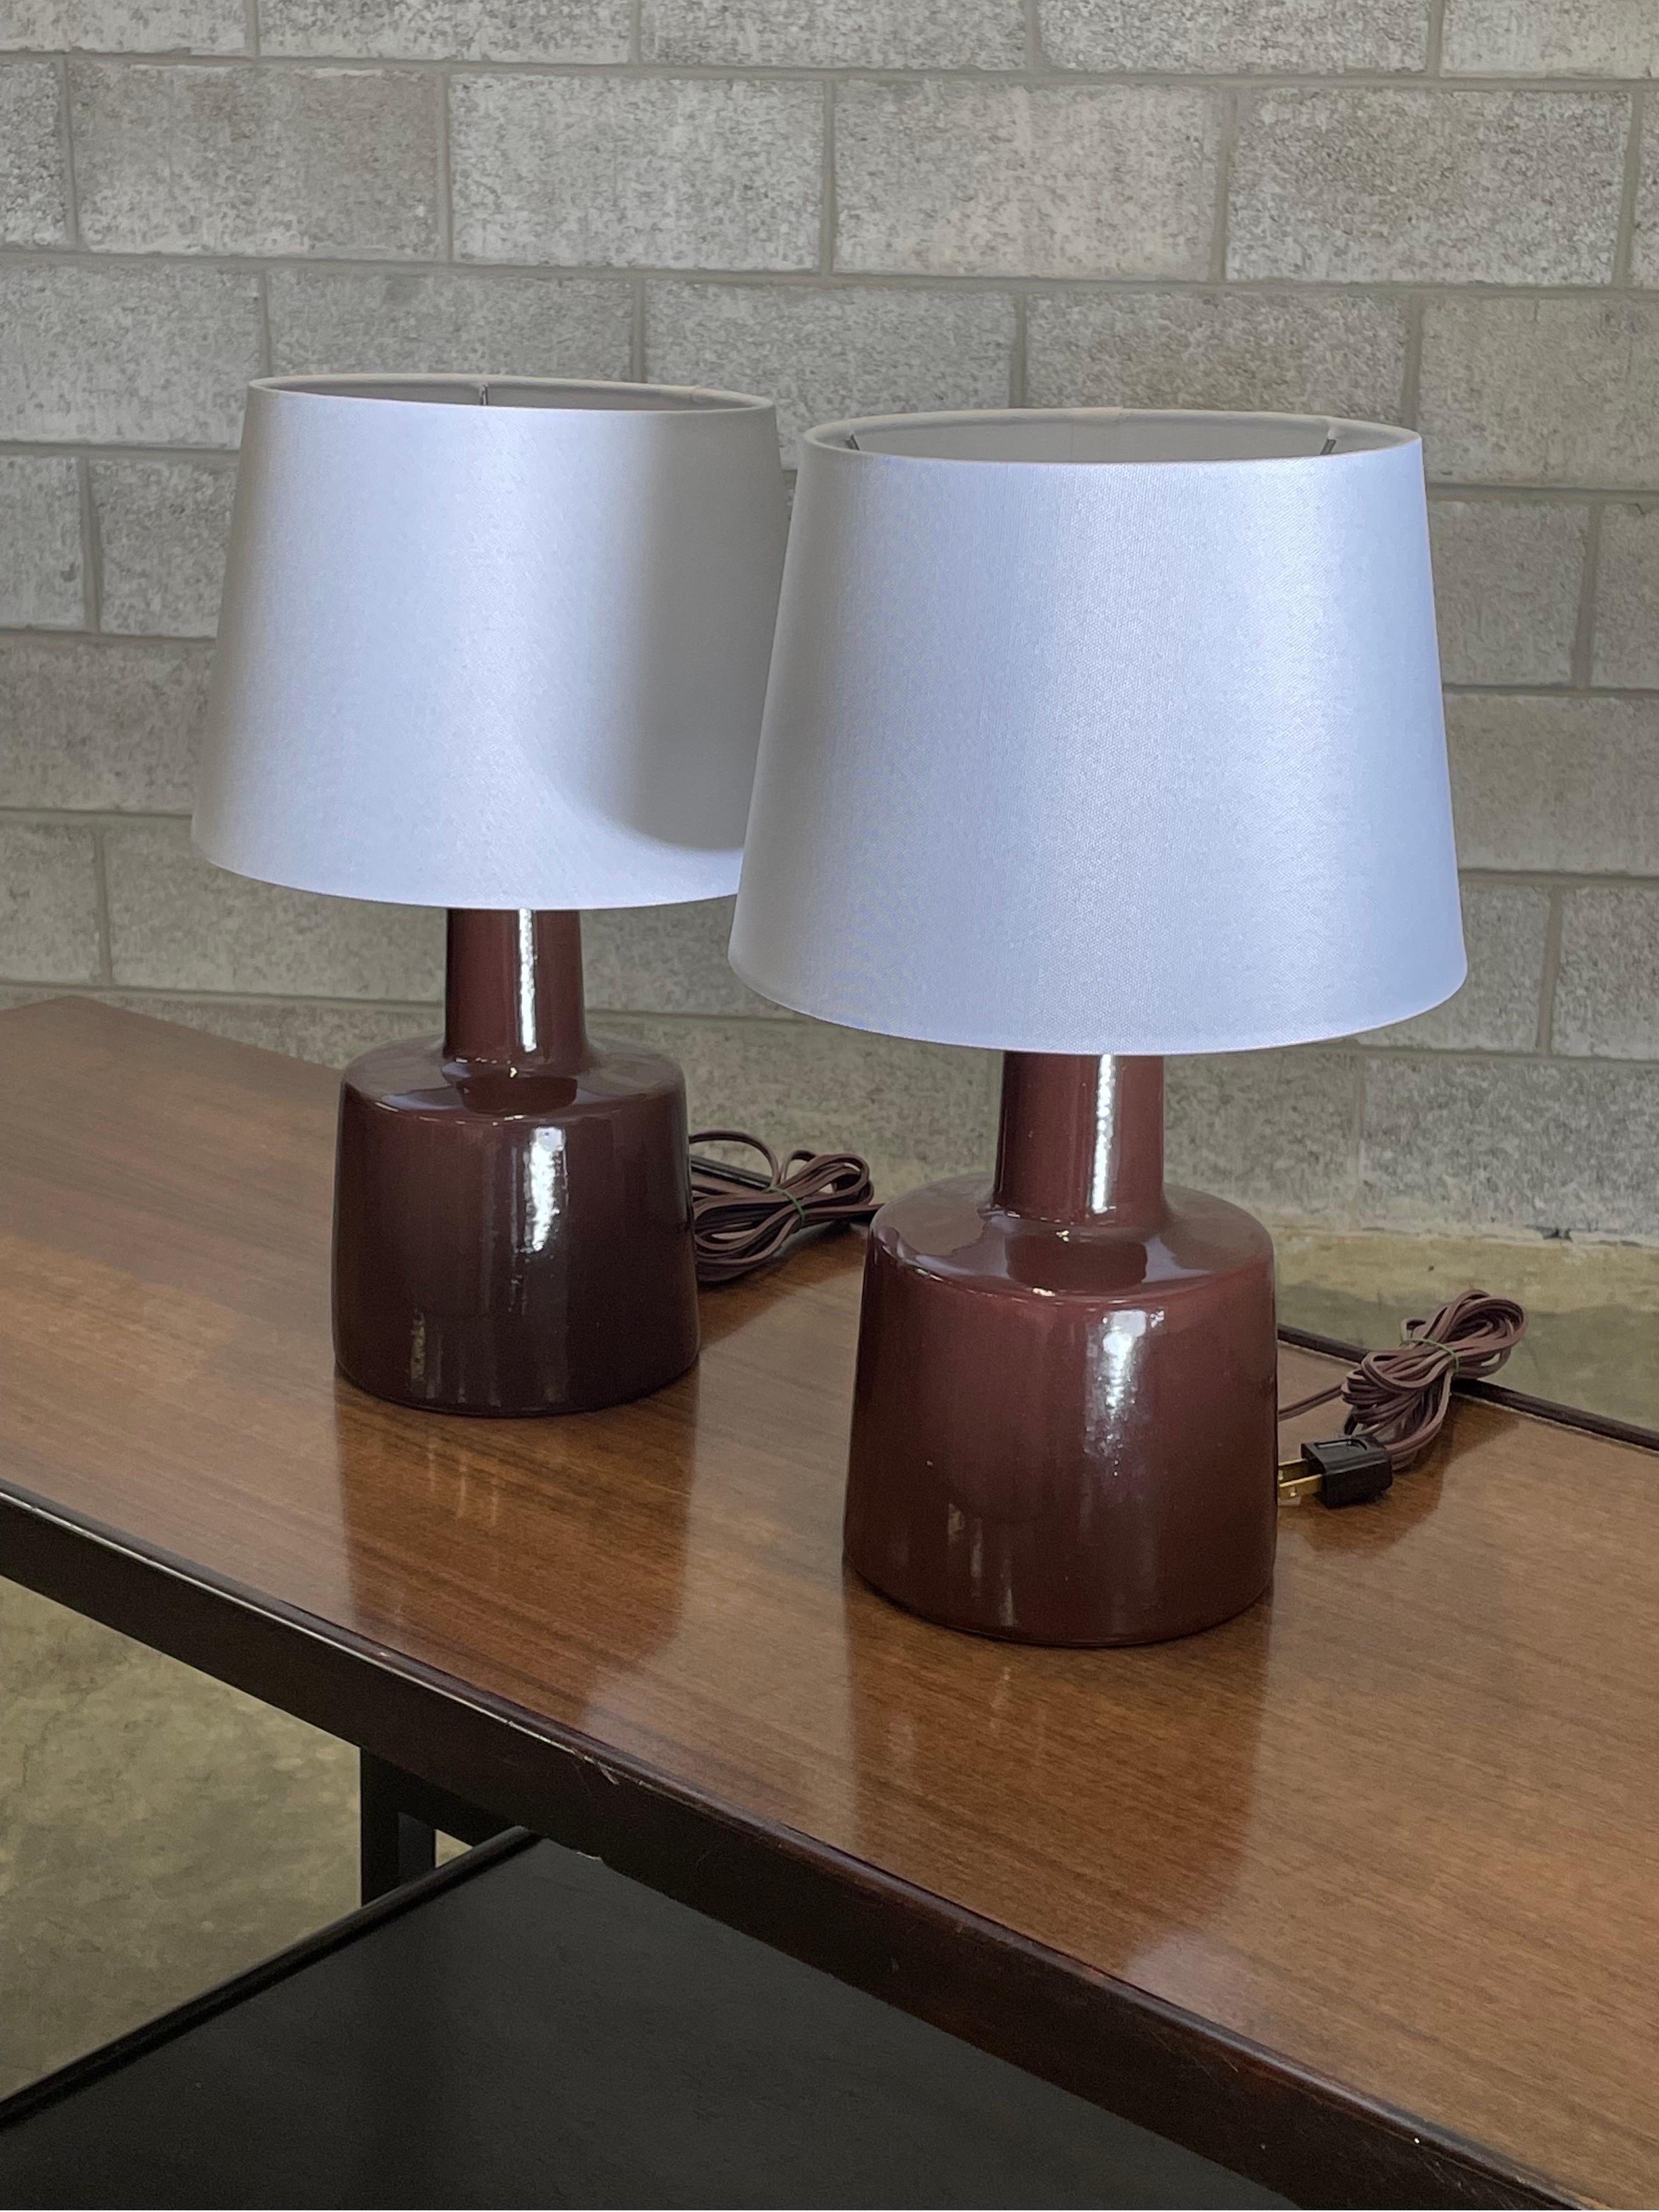 Lampes de table conçues par le duo de céramistes Jane et Gordon Martz pour Marshall Studios. La couleur est rouge foncé/brun, presque comme un vin.

Dimensions totales : 16